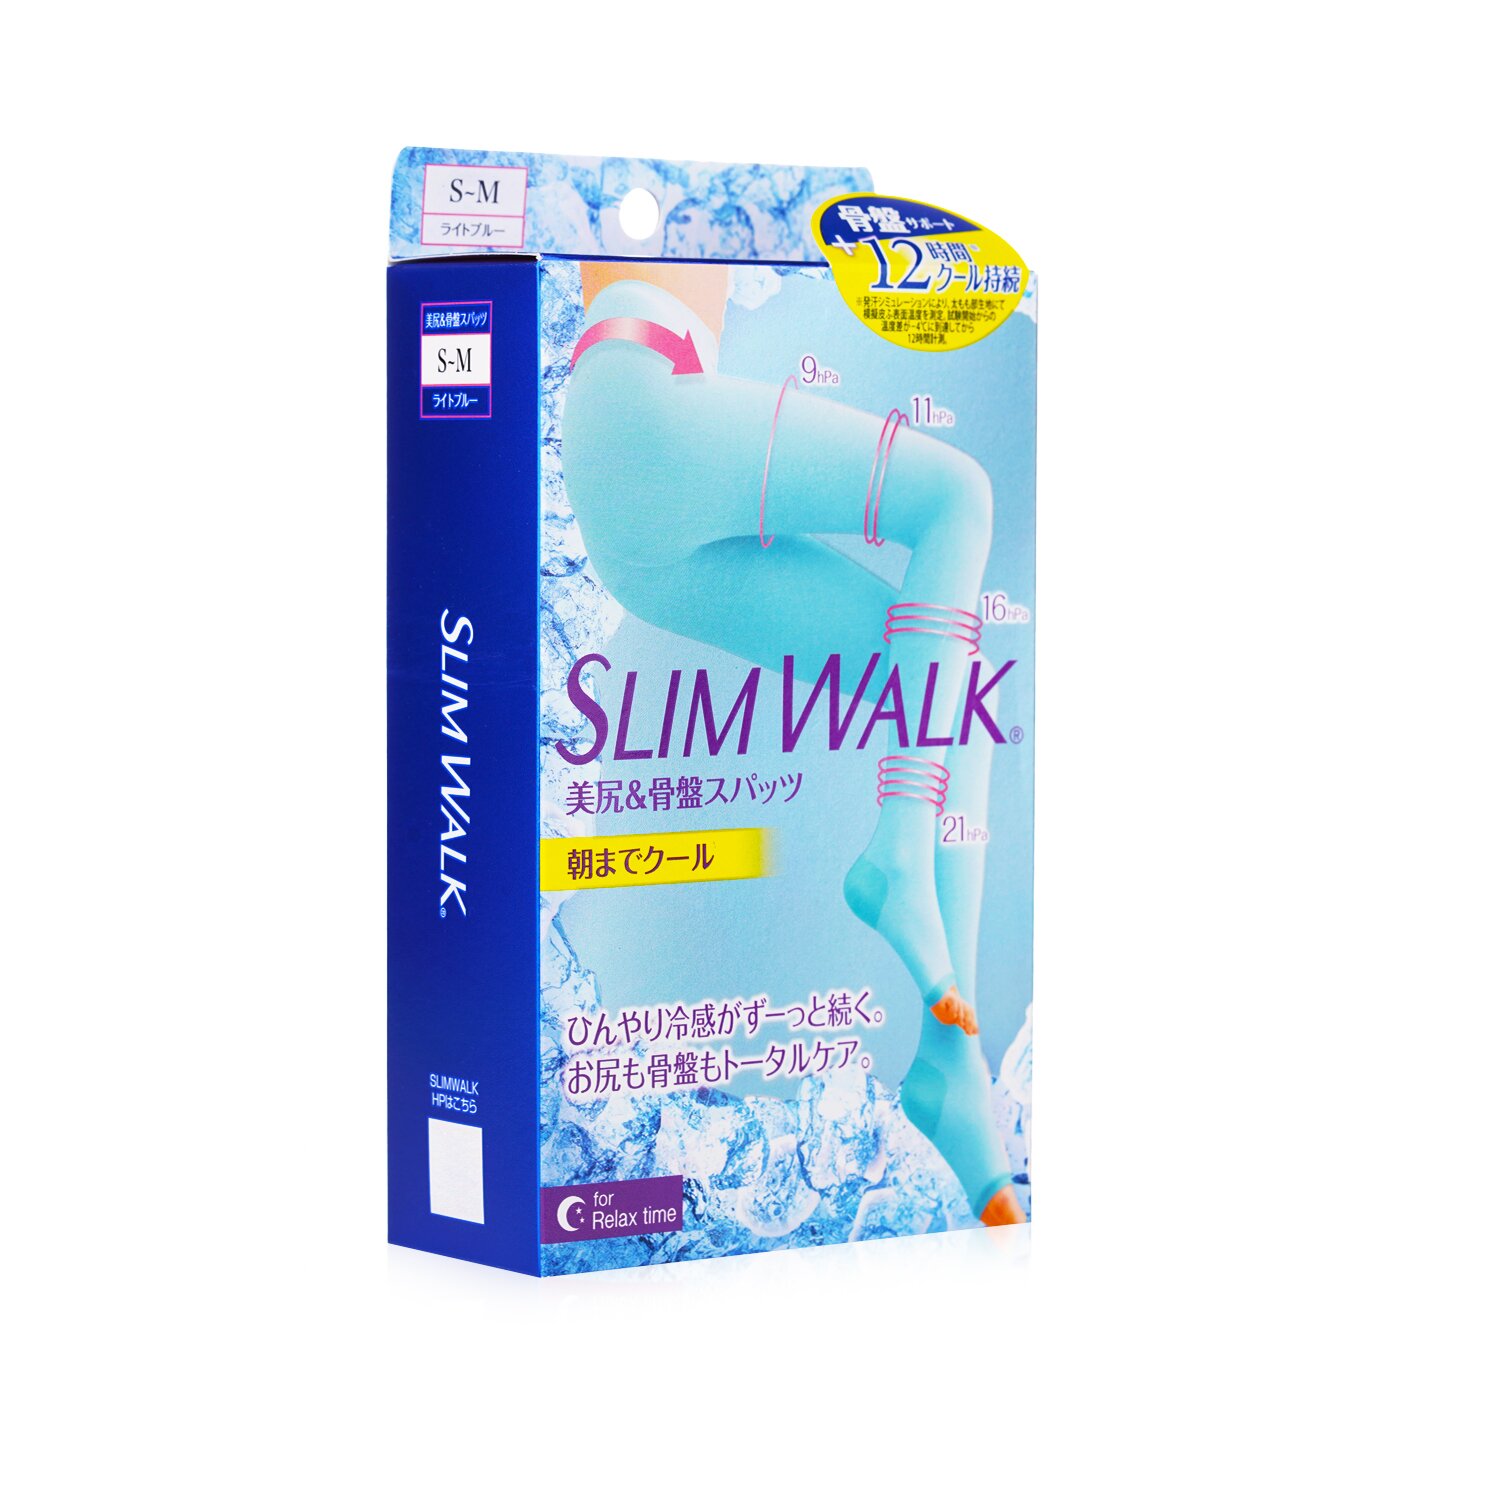 SlimWalk Cooling Compression Sleep Pantyhose 1pair